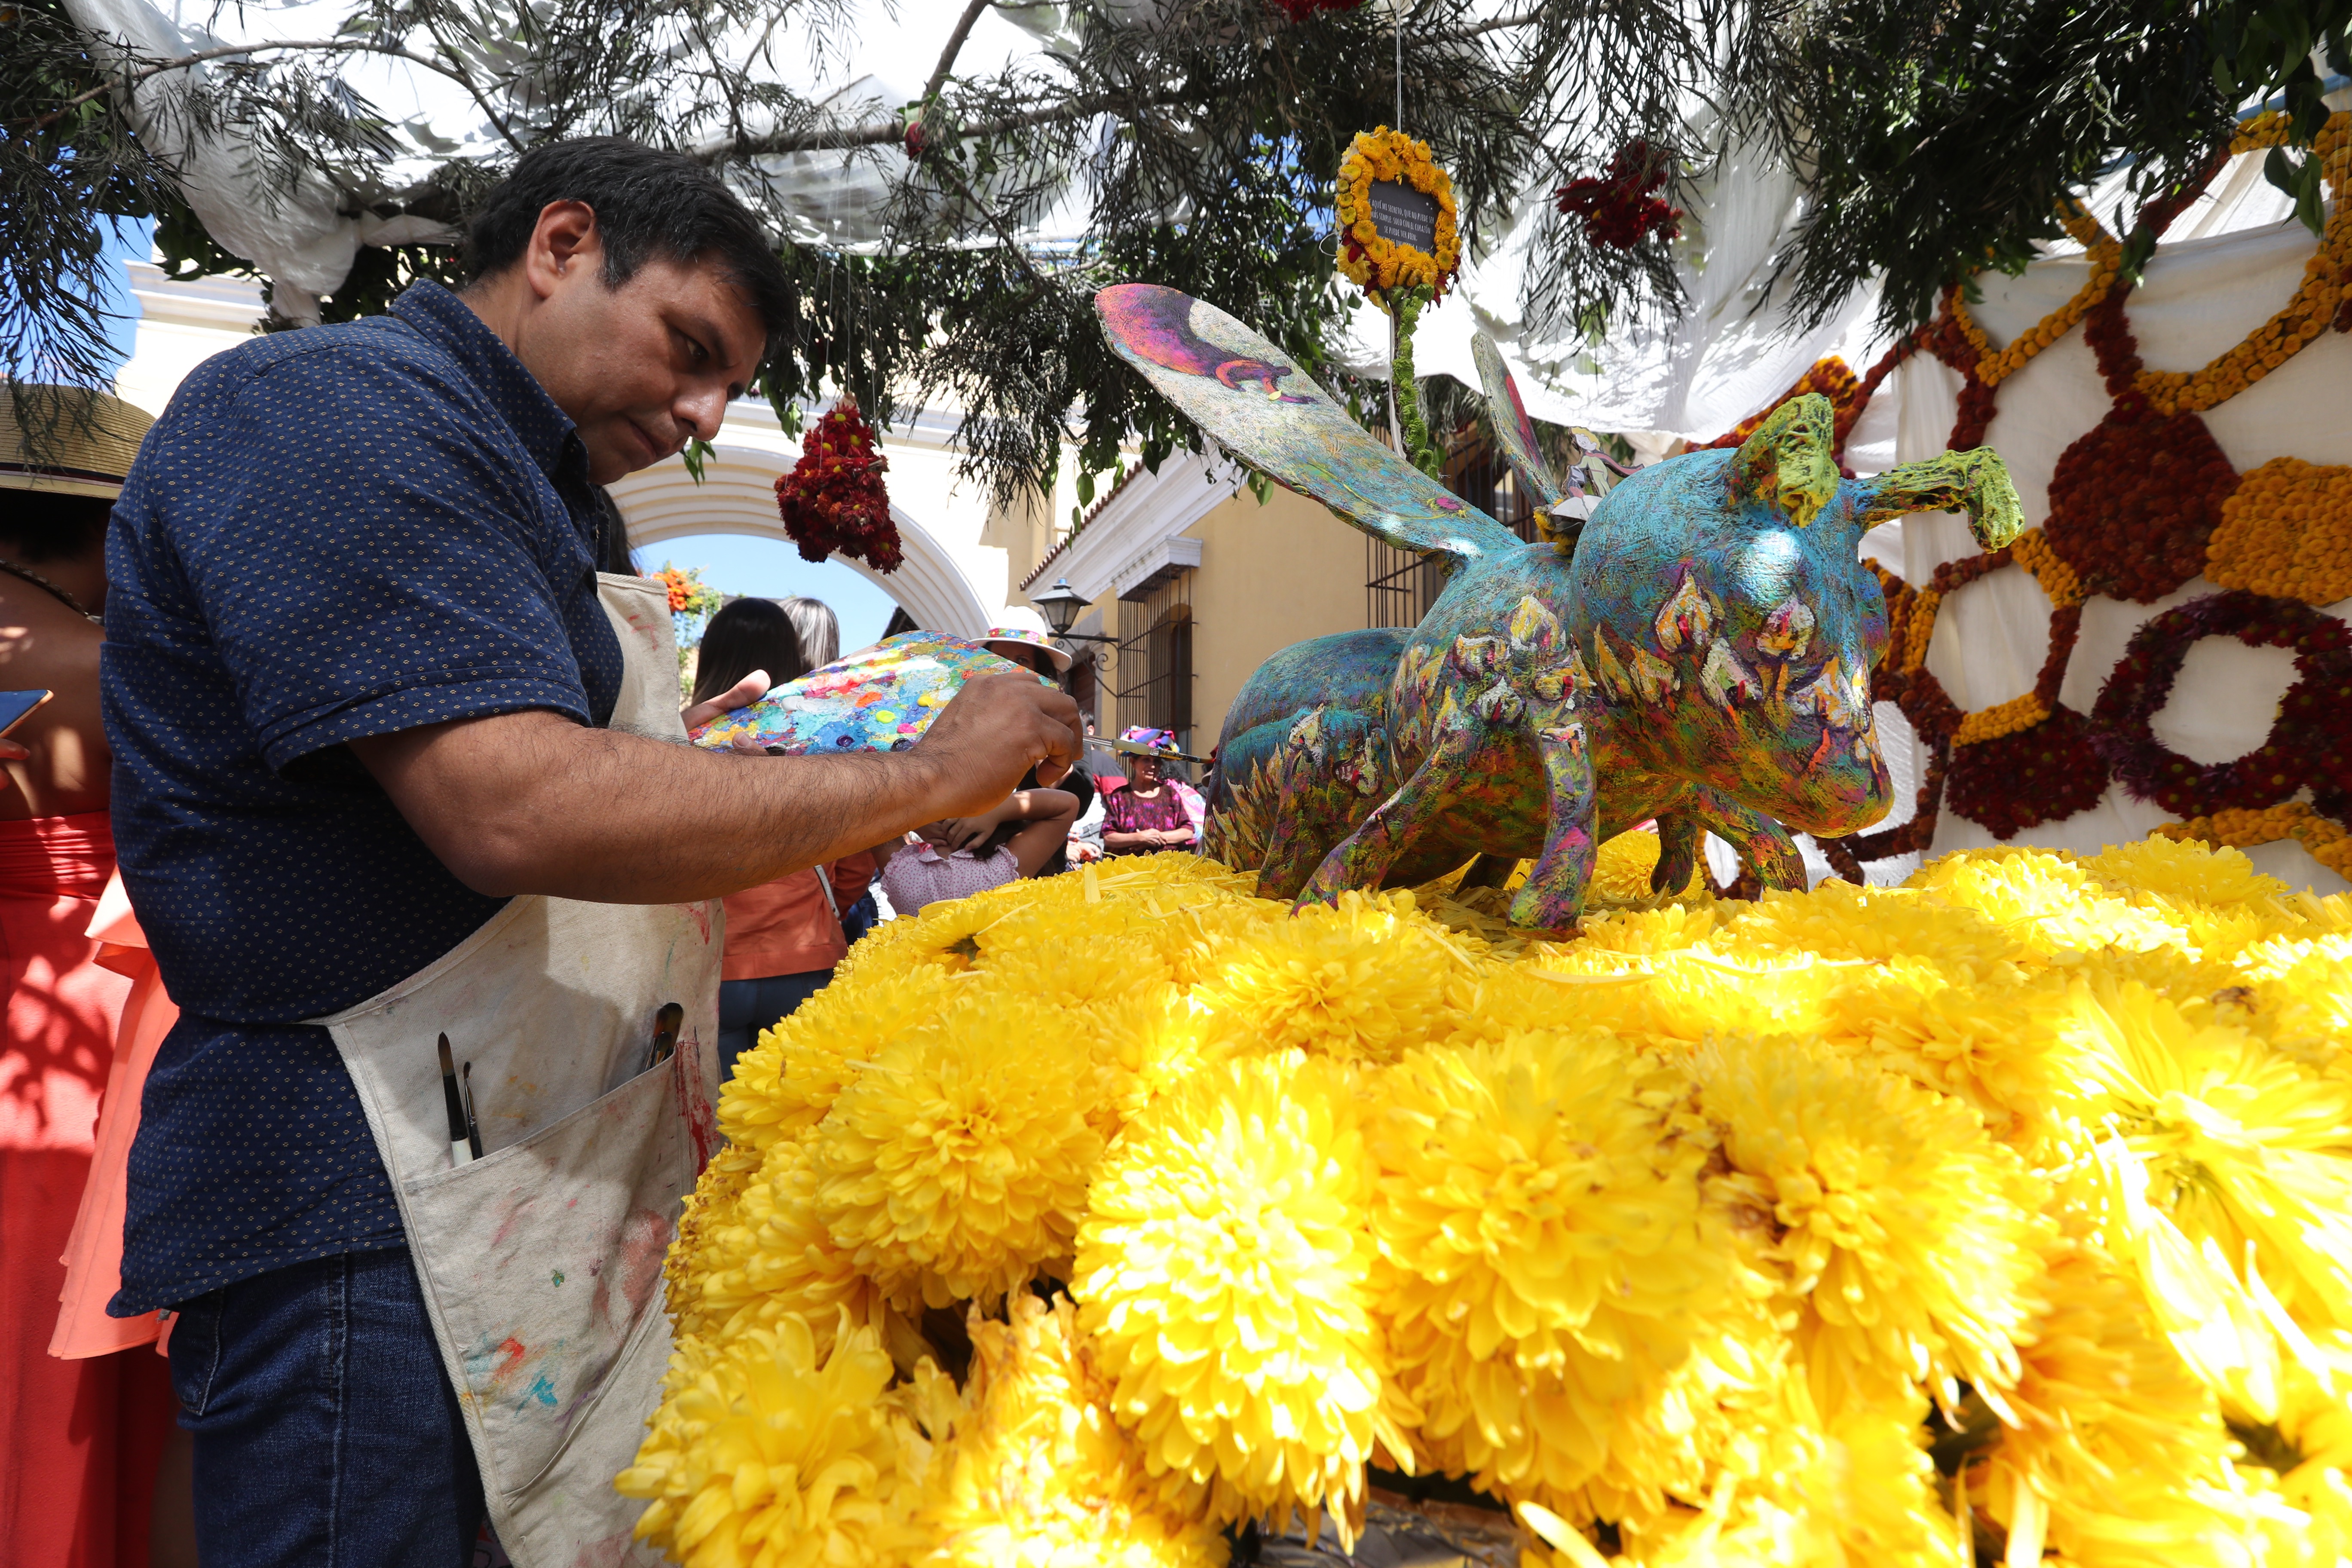 Exposición de Flores en la Antigua Guatemala donde llegan turistas de distintos lugares para disfrutar la vista de flores de toda tipo. La exposición se realizó el 16 y 17 de Noviembre en la calle de Arco en Antigua Guatemala. (Foto Prensa Libre: Erick Ávila)